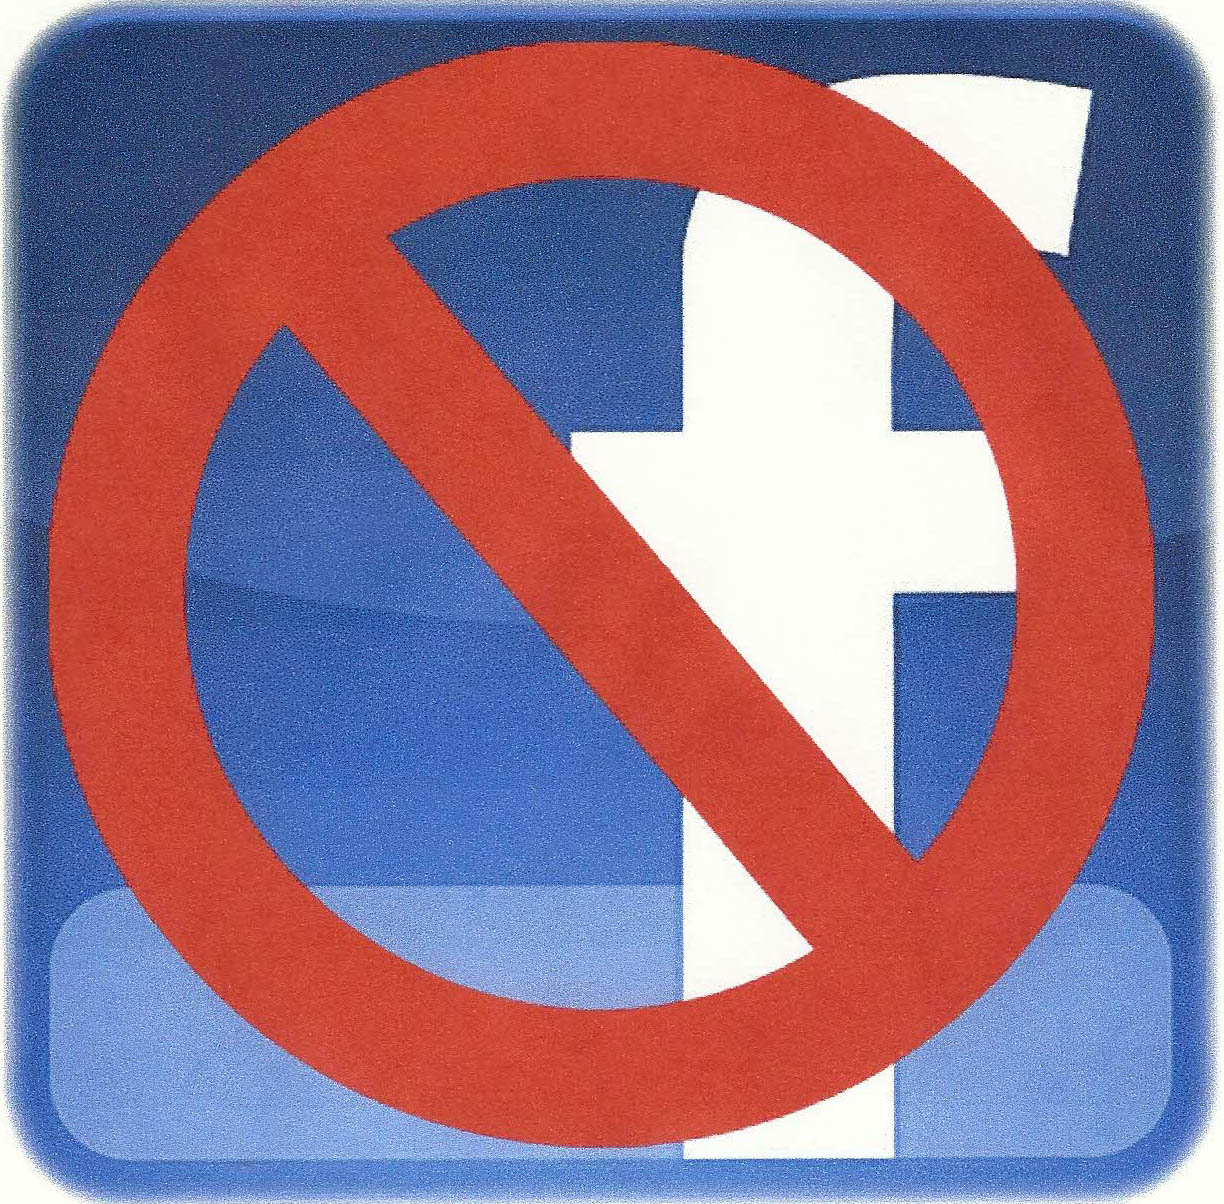 No-Facebook-logo